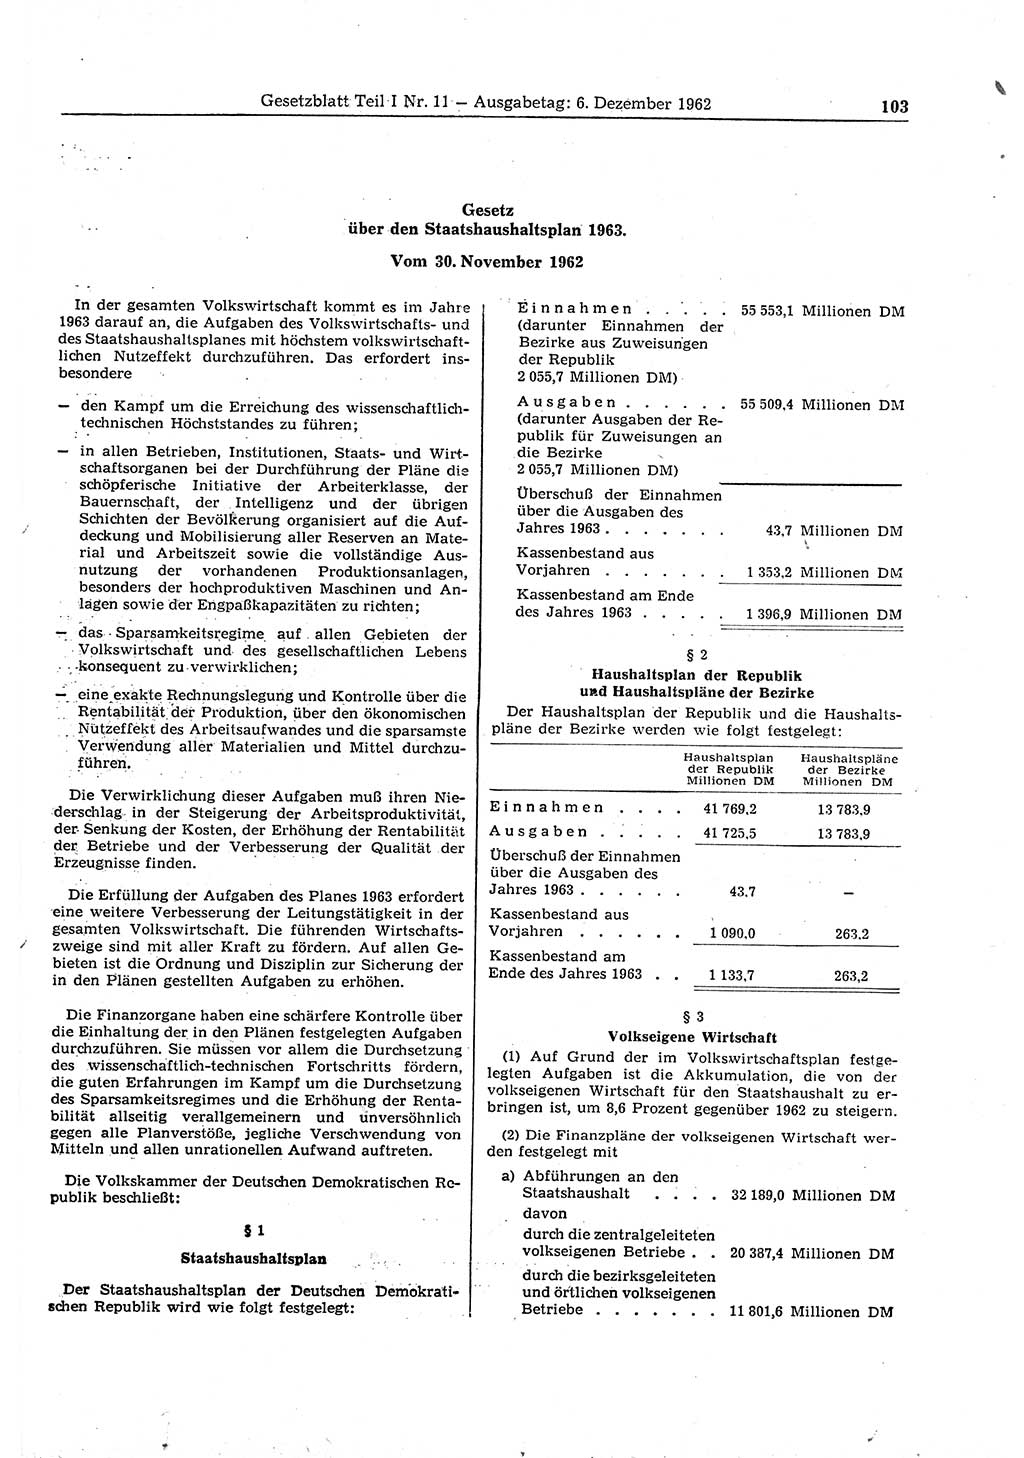 Gesetzblatt (GBl.) der Deutschen Demokratischen Republik (DDR) Teil Ⅰ 1962, Seite 103 (GBl. DDR Ⅰ 1962, S. 103)